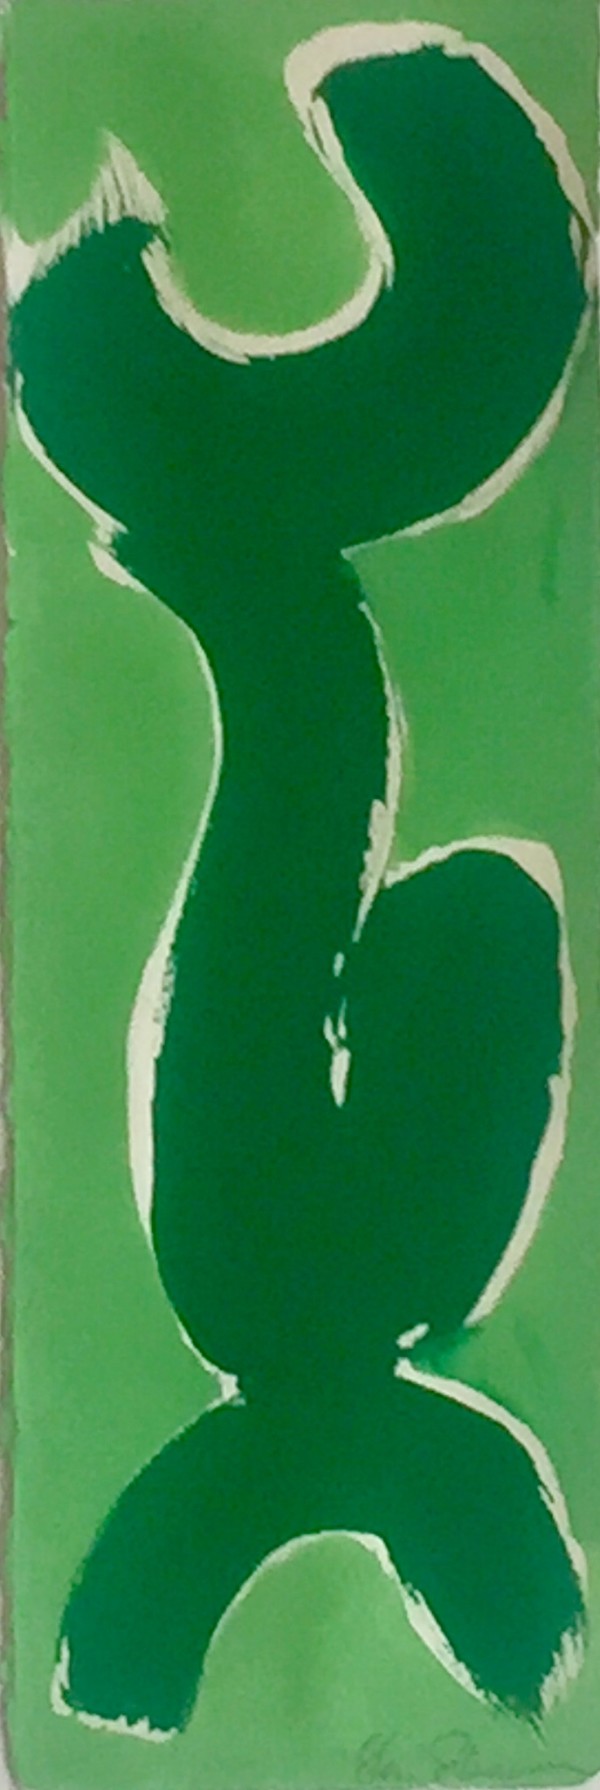 Two Greens by Sherri Silverman